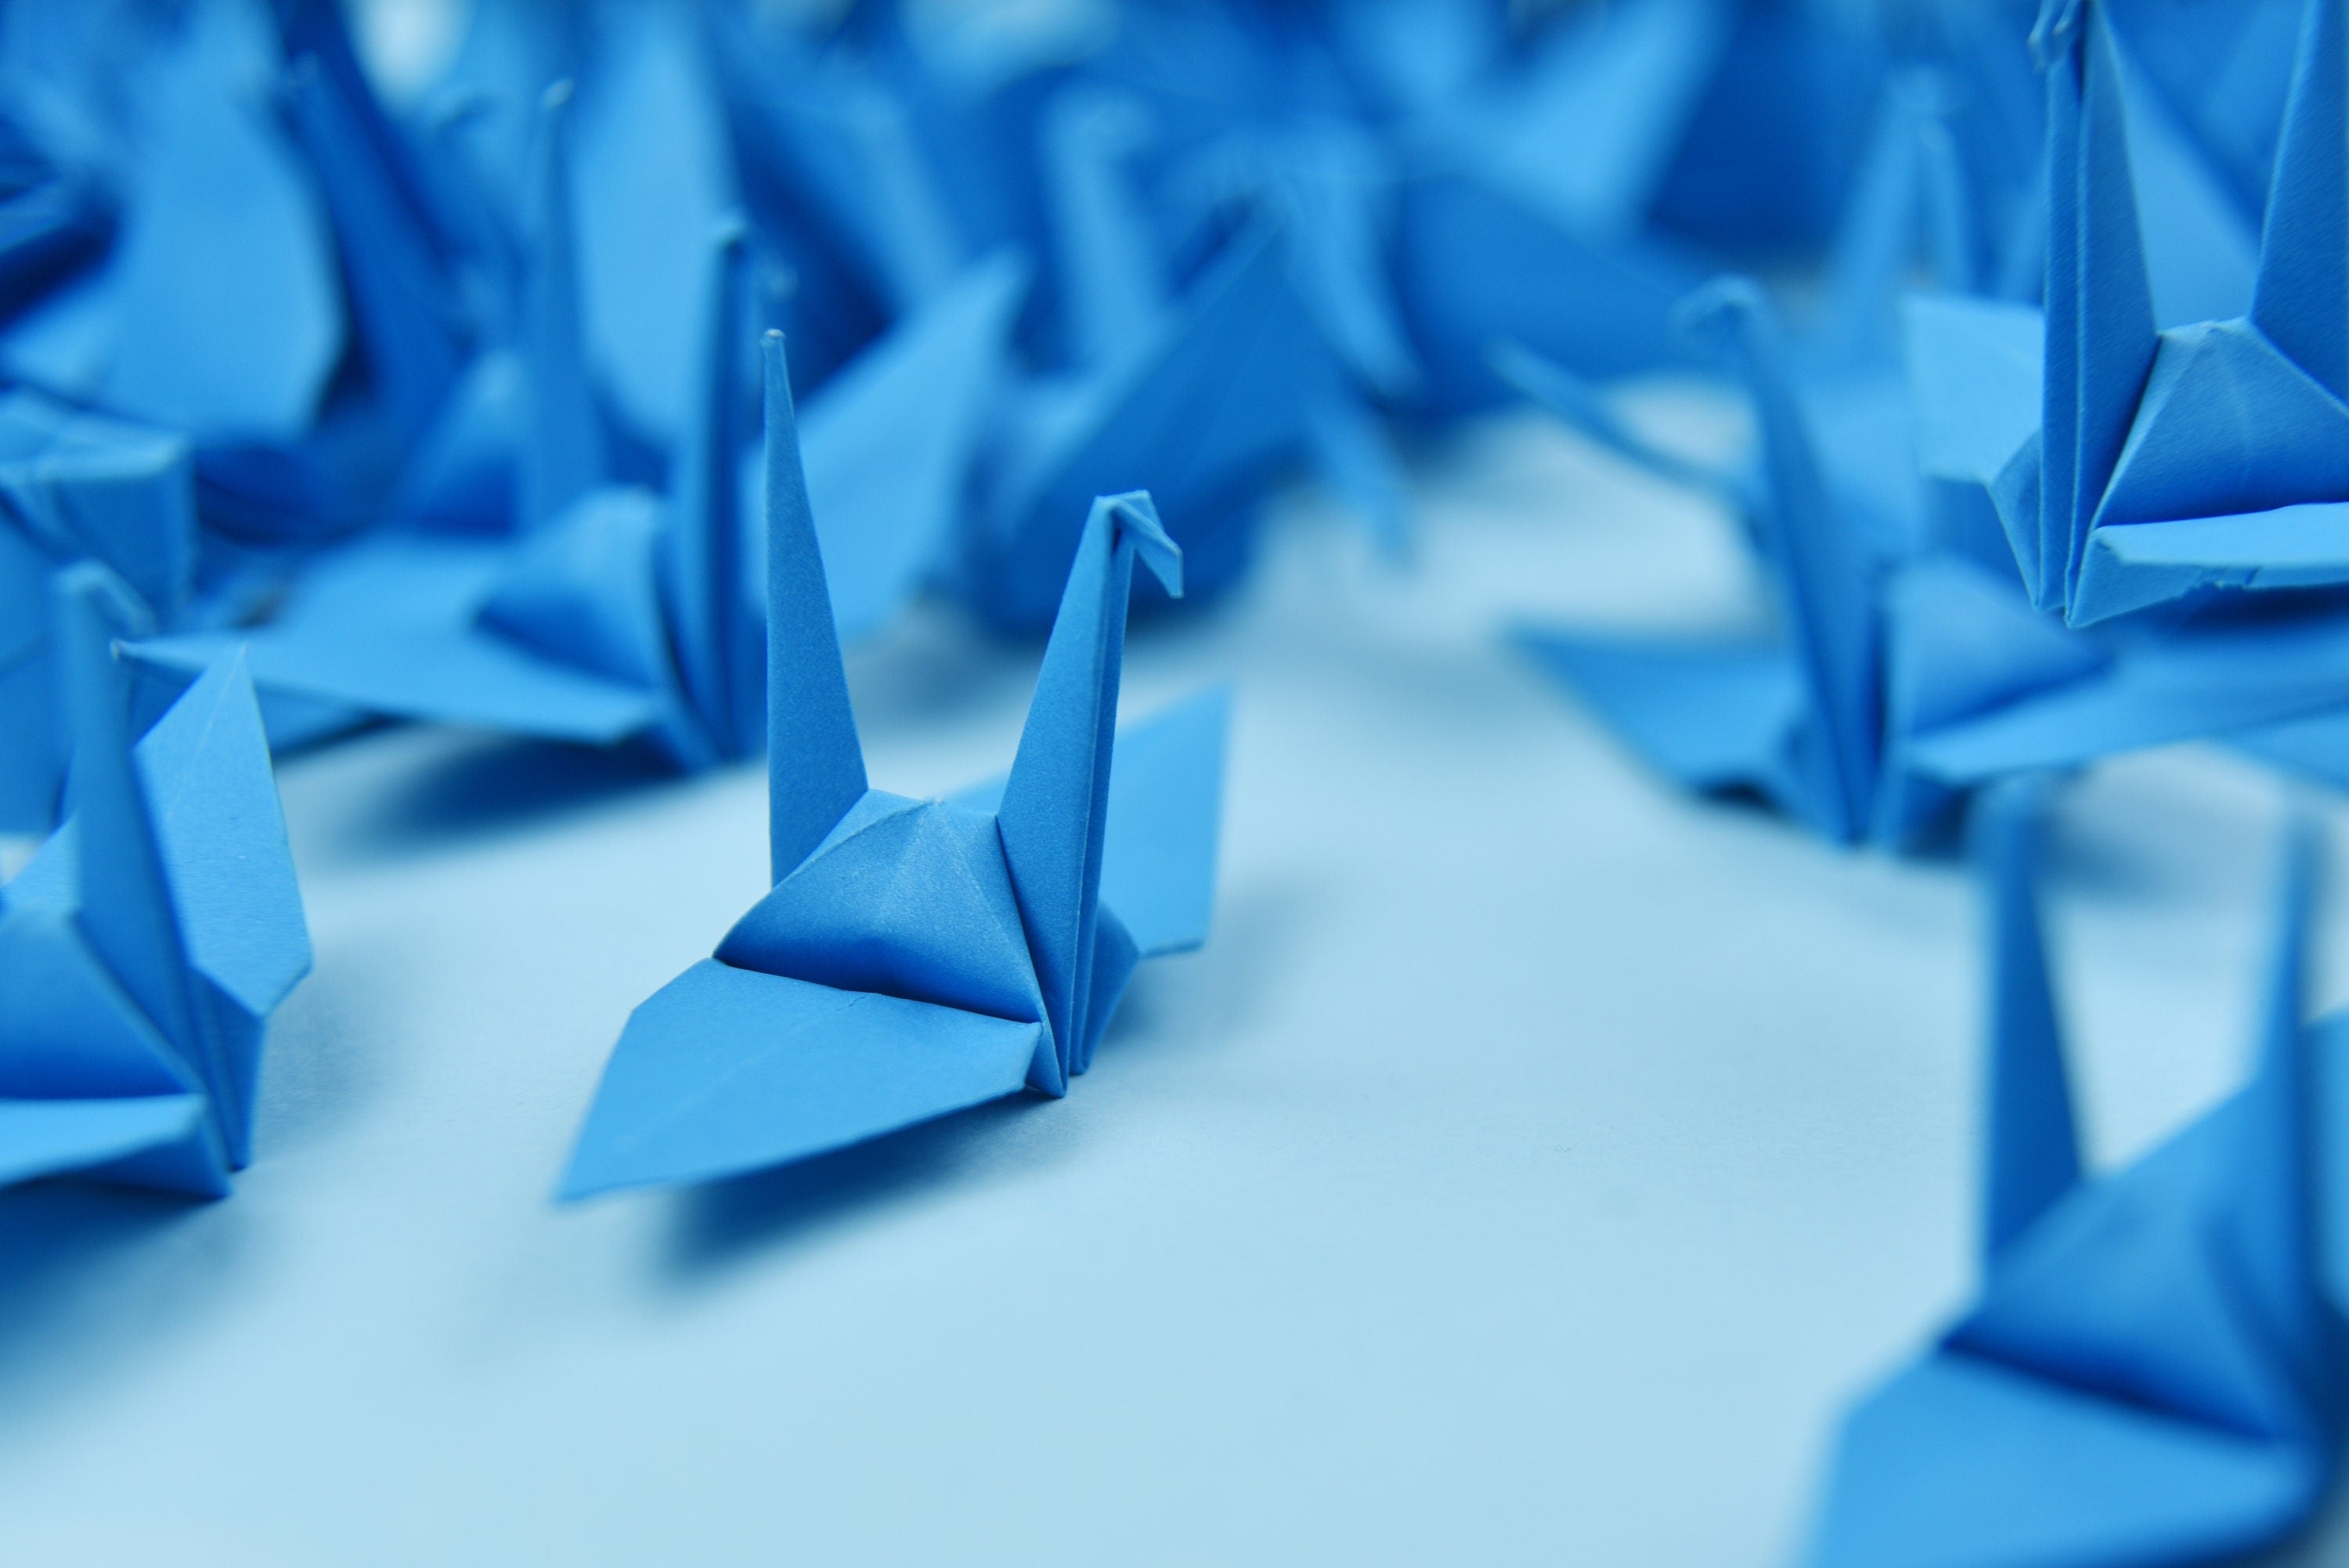 100 gru di carta origami - blu scuro - 7,5 cm (3 pollici) - per decorazioni, ornamenti, regali di nozze, Natale